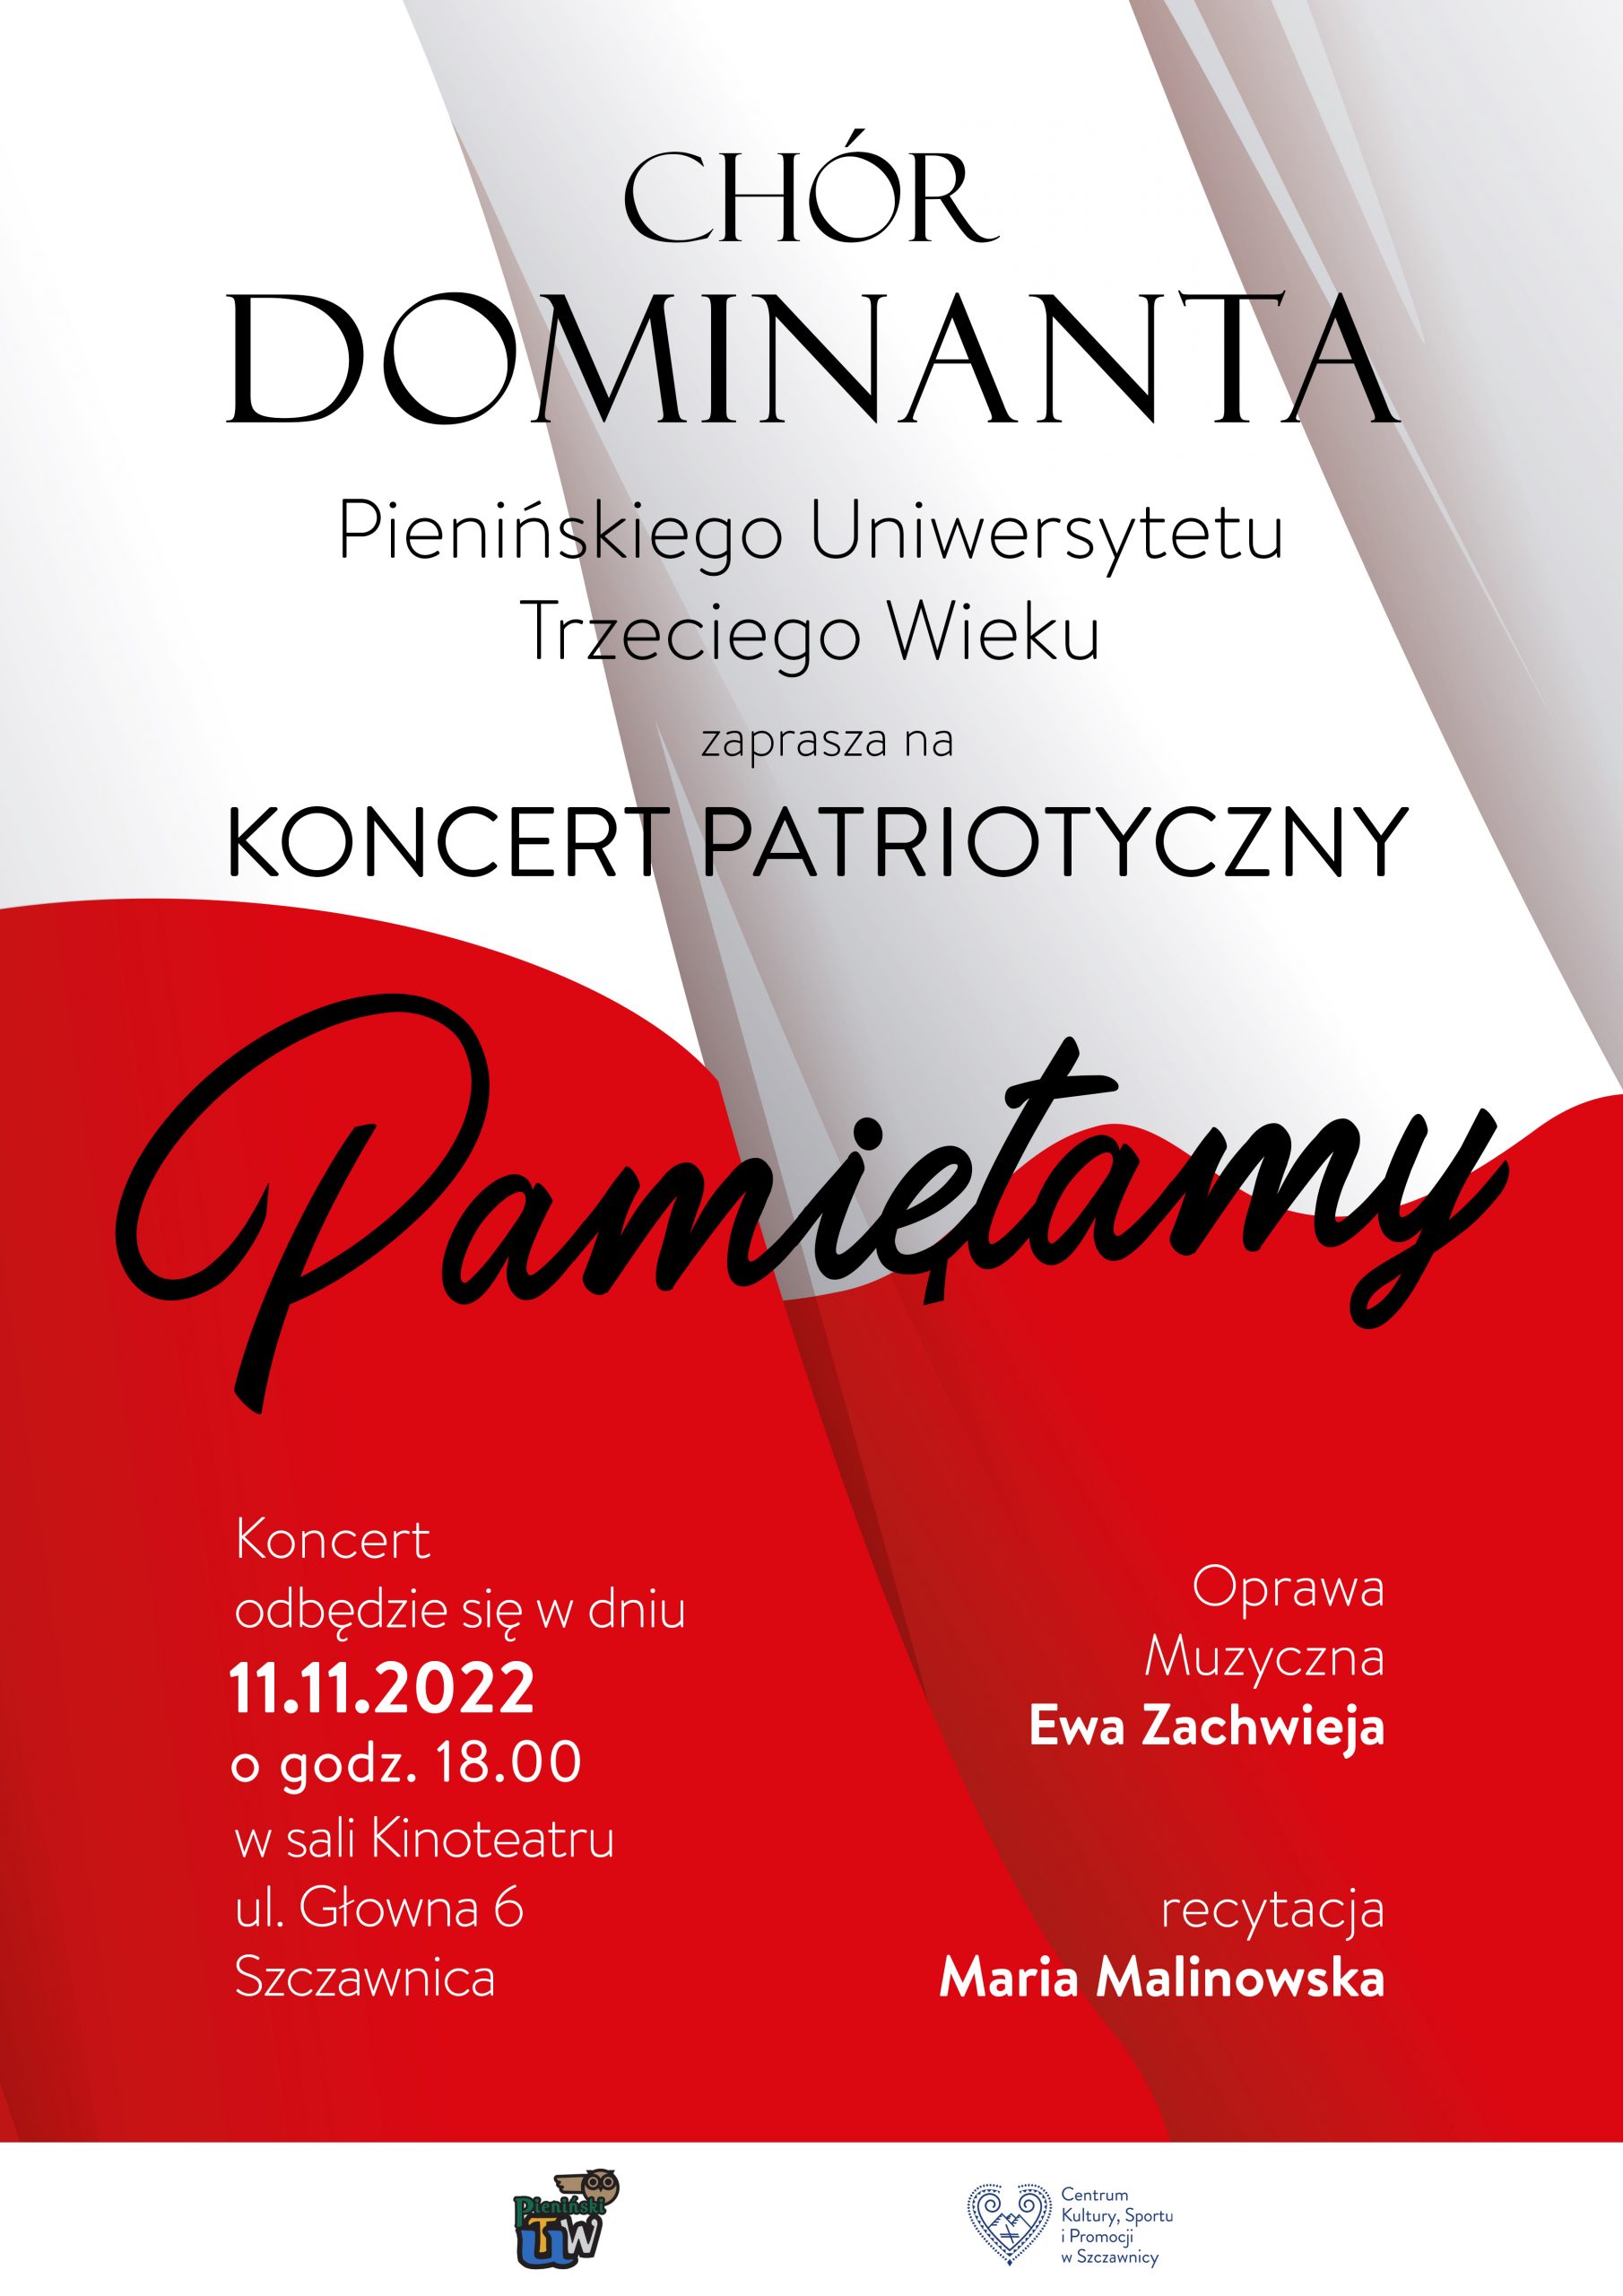 Plakat zapraszający na koncert chóru Dominanta